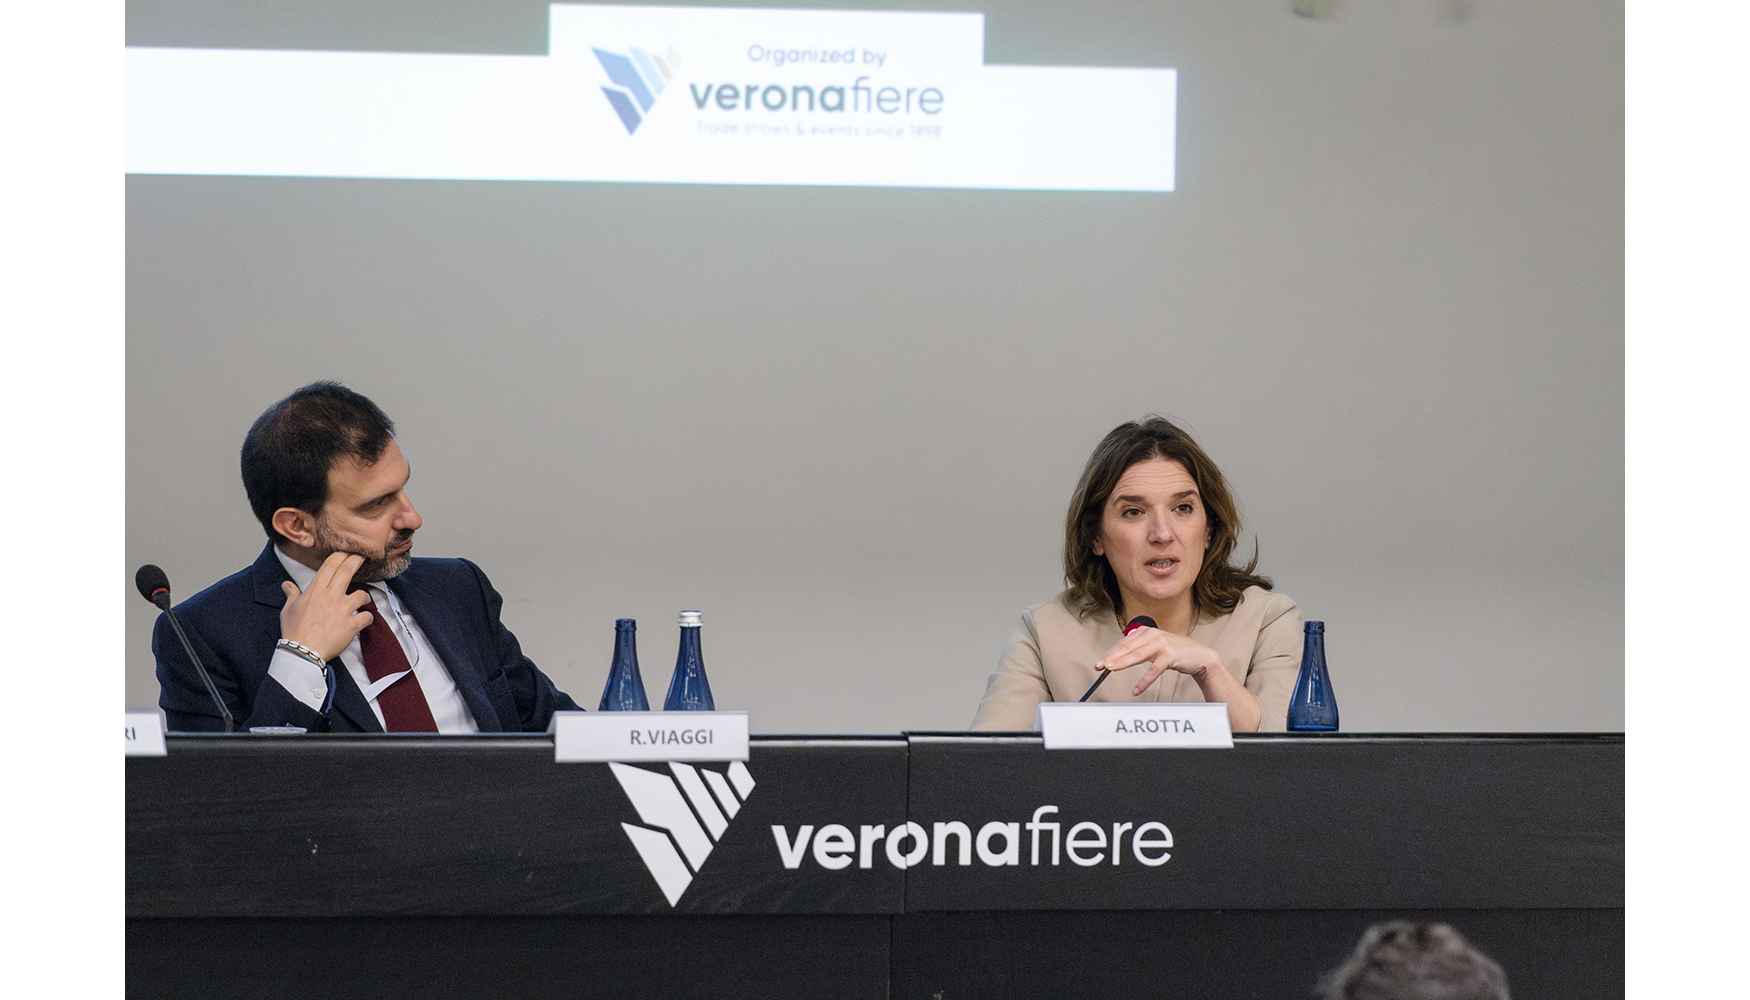 De izquierda a derecha: Riccardo Viaggi, secretario general de CECE, y Alessia Rotta, vicepresidenta de Autobrennero.  Veronafiere-FotoEnnevi...